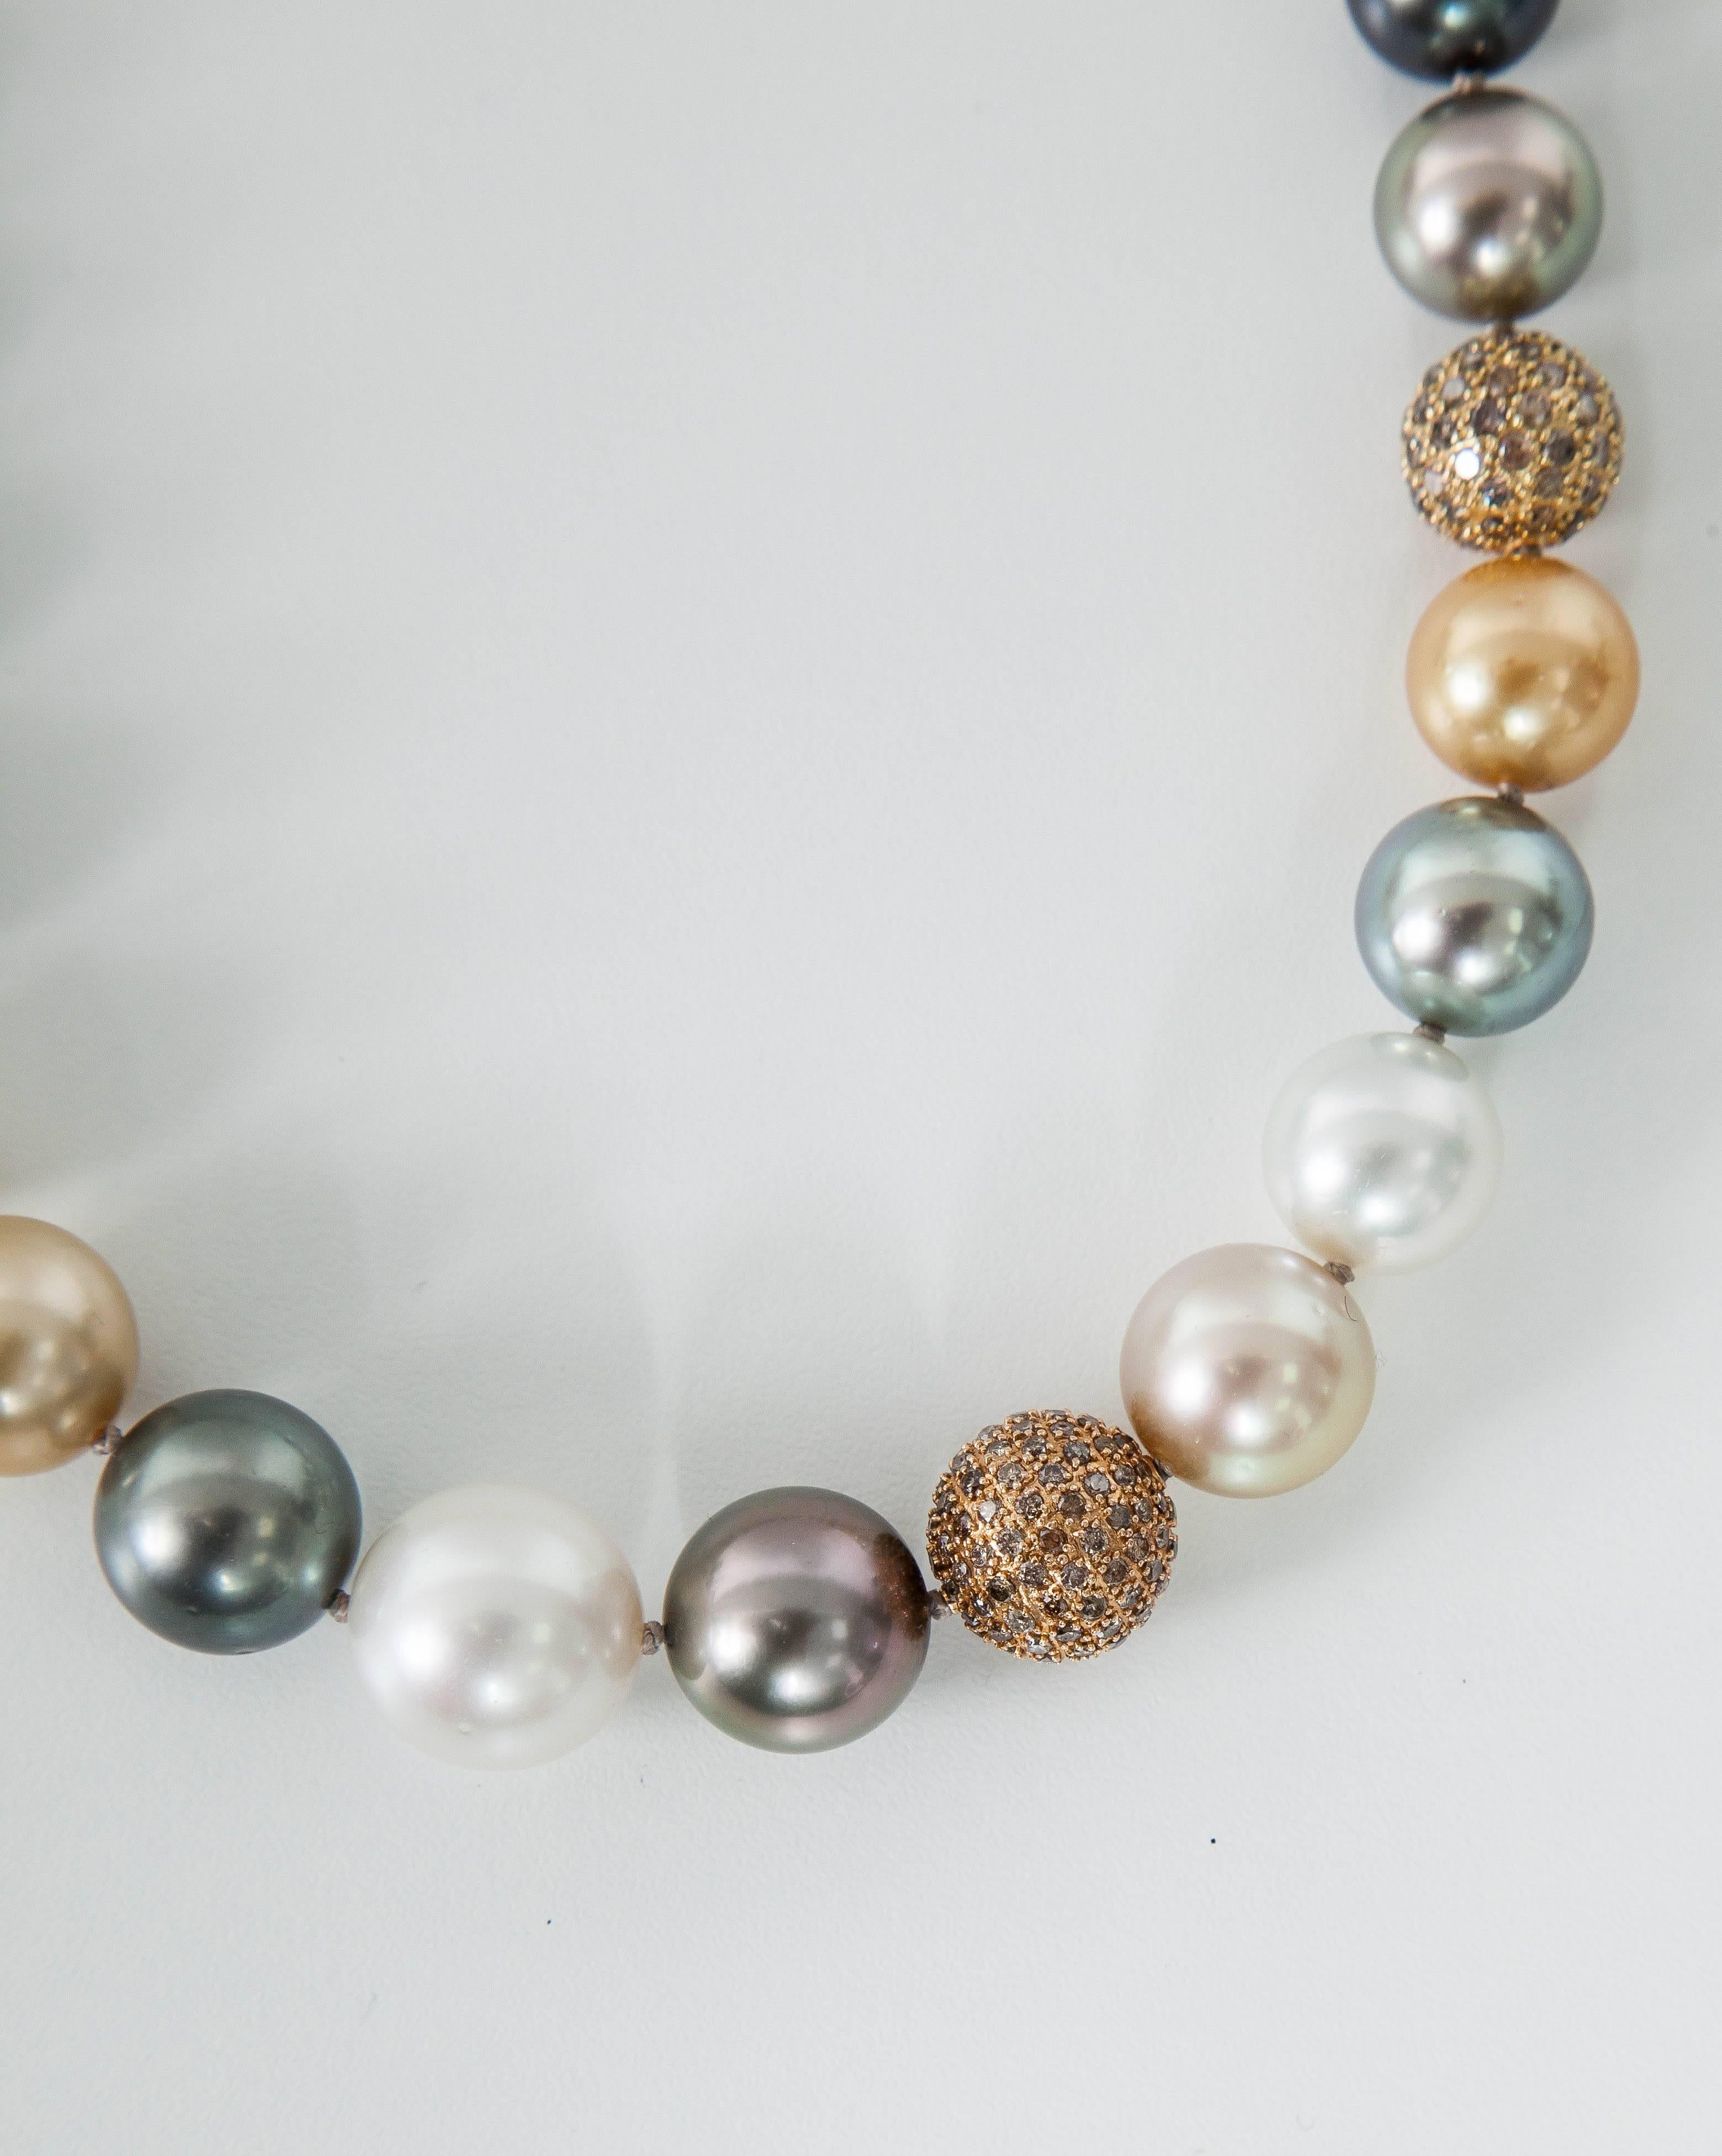 Ce collier étonnant présente :
Collier multicolore de culture des mers du Sud Taille approximative 10.5mm à 14.5mm
Nombre de perles : 32pcs.
Qualité de la perle : AA
Éclat de la perle : AA
Boules de diamant : 7 cts
L'origine des perles est :